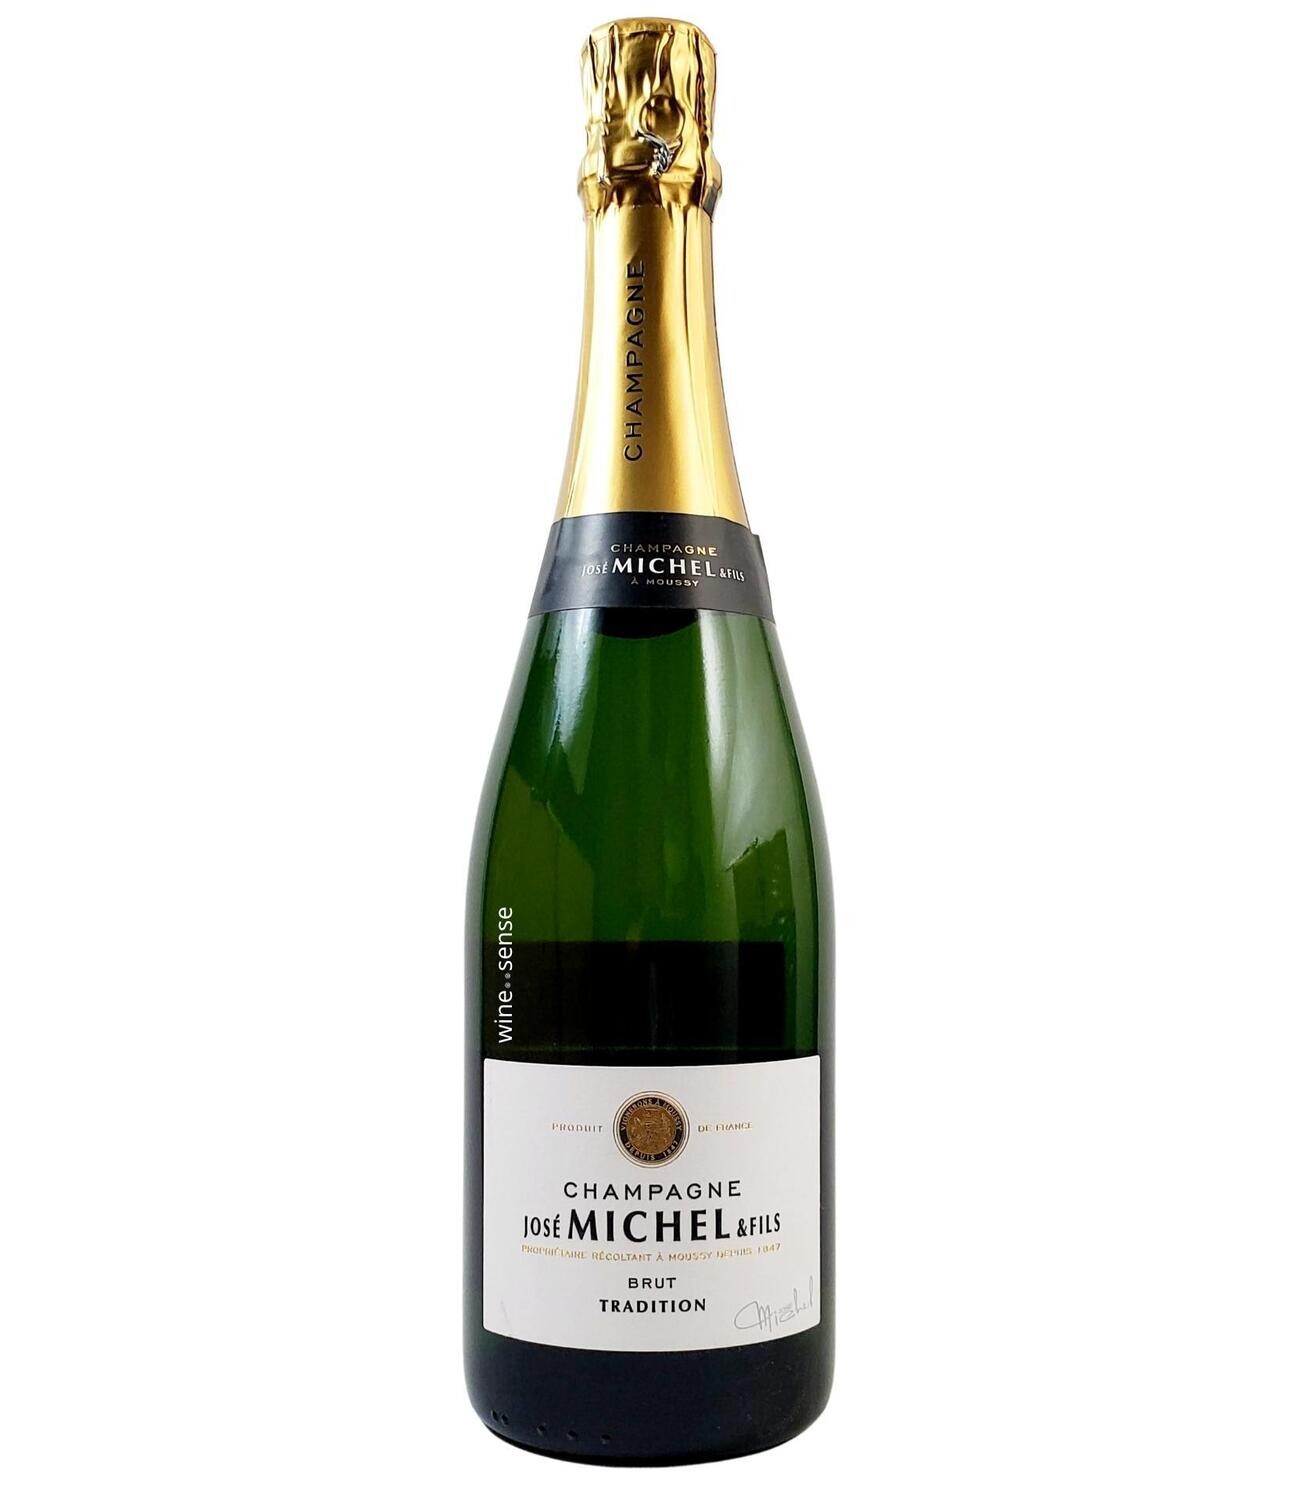 Jose Michel, Brut, Champagne, Brut 750ml